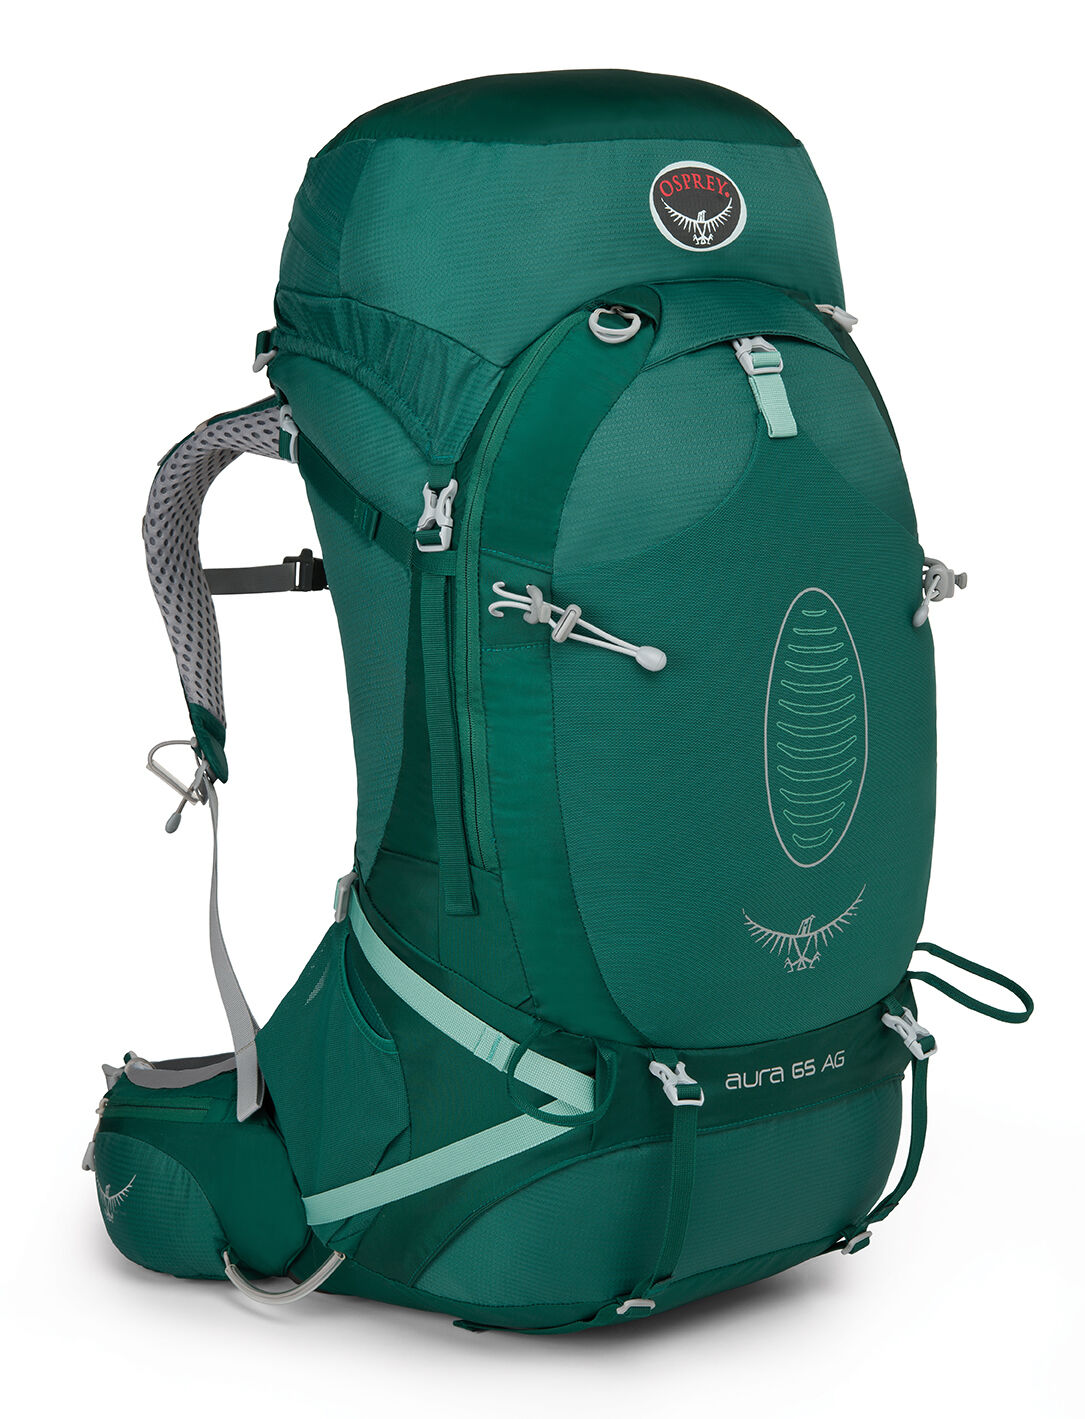 Osprey - Aura AG 65 - Hiking backpack - Women's